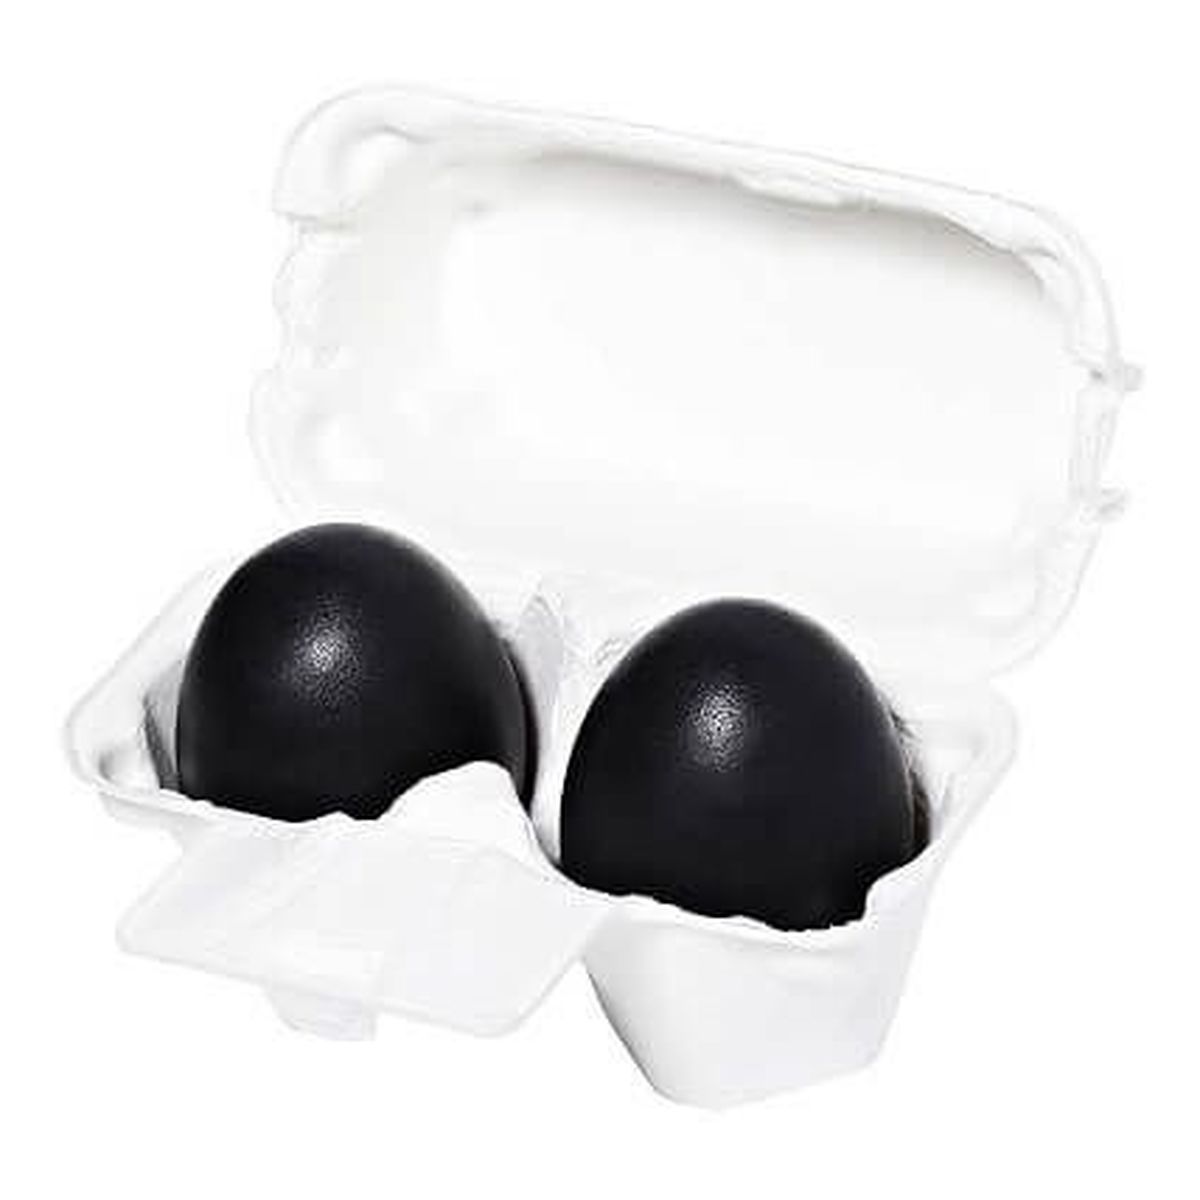 Holika Holika Charcoal Egg Soap mydło do twarzy z ekstraktem z węgla drzewnego 2x50g 100g